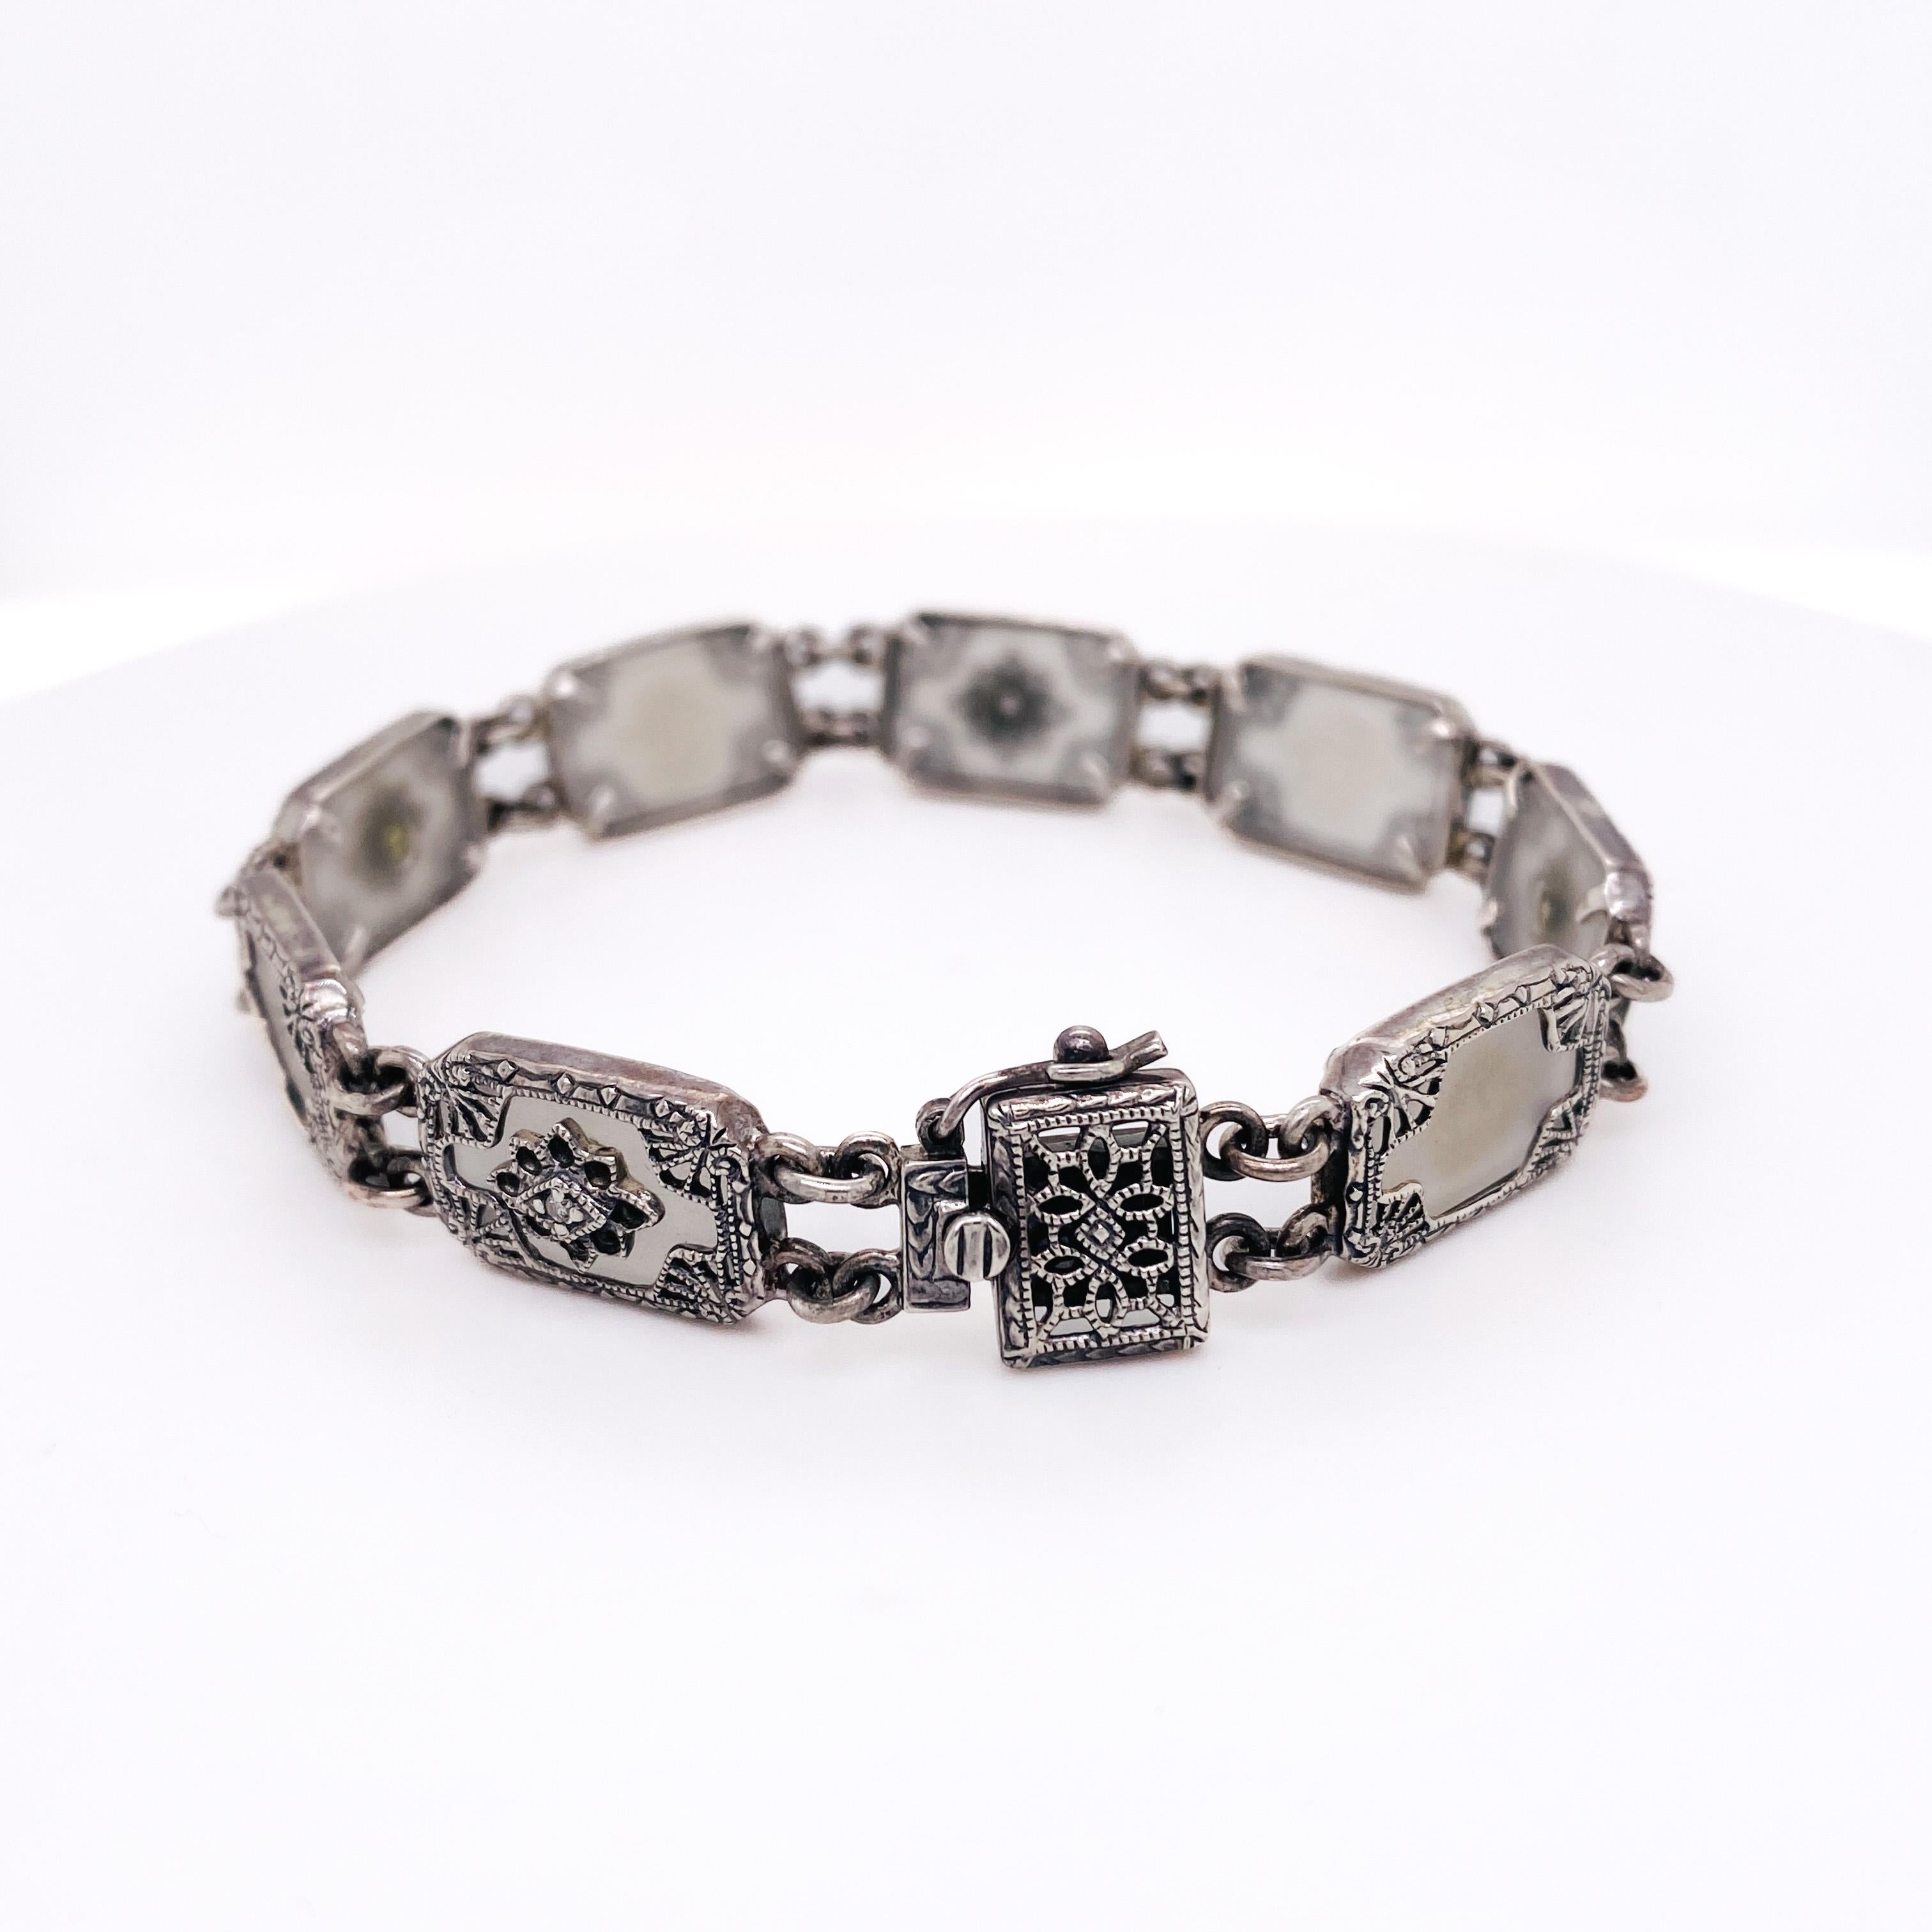 Le complément parfait à toute collection de bijoux vintage ! Ce bracelet unique est composé de maillons en argent sterling fabriqués à la main, avec un motif filigrané sur chacun d'eux, qui enferme un morceau d'agate et de calcédoine. La calcédoine